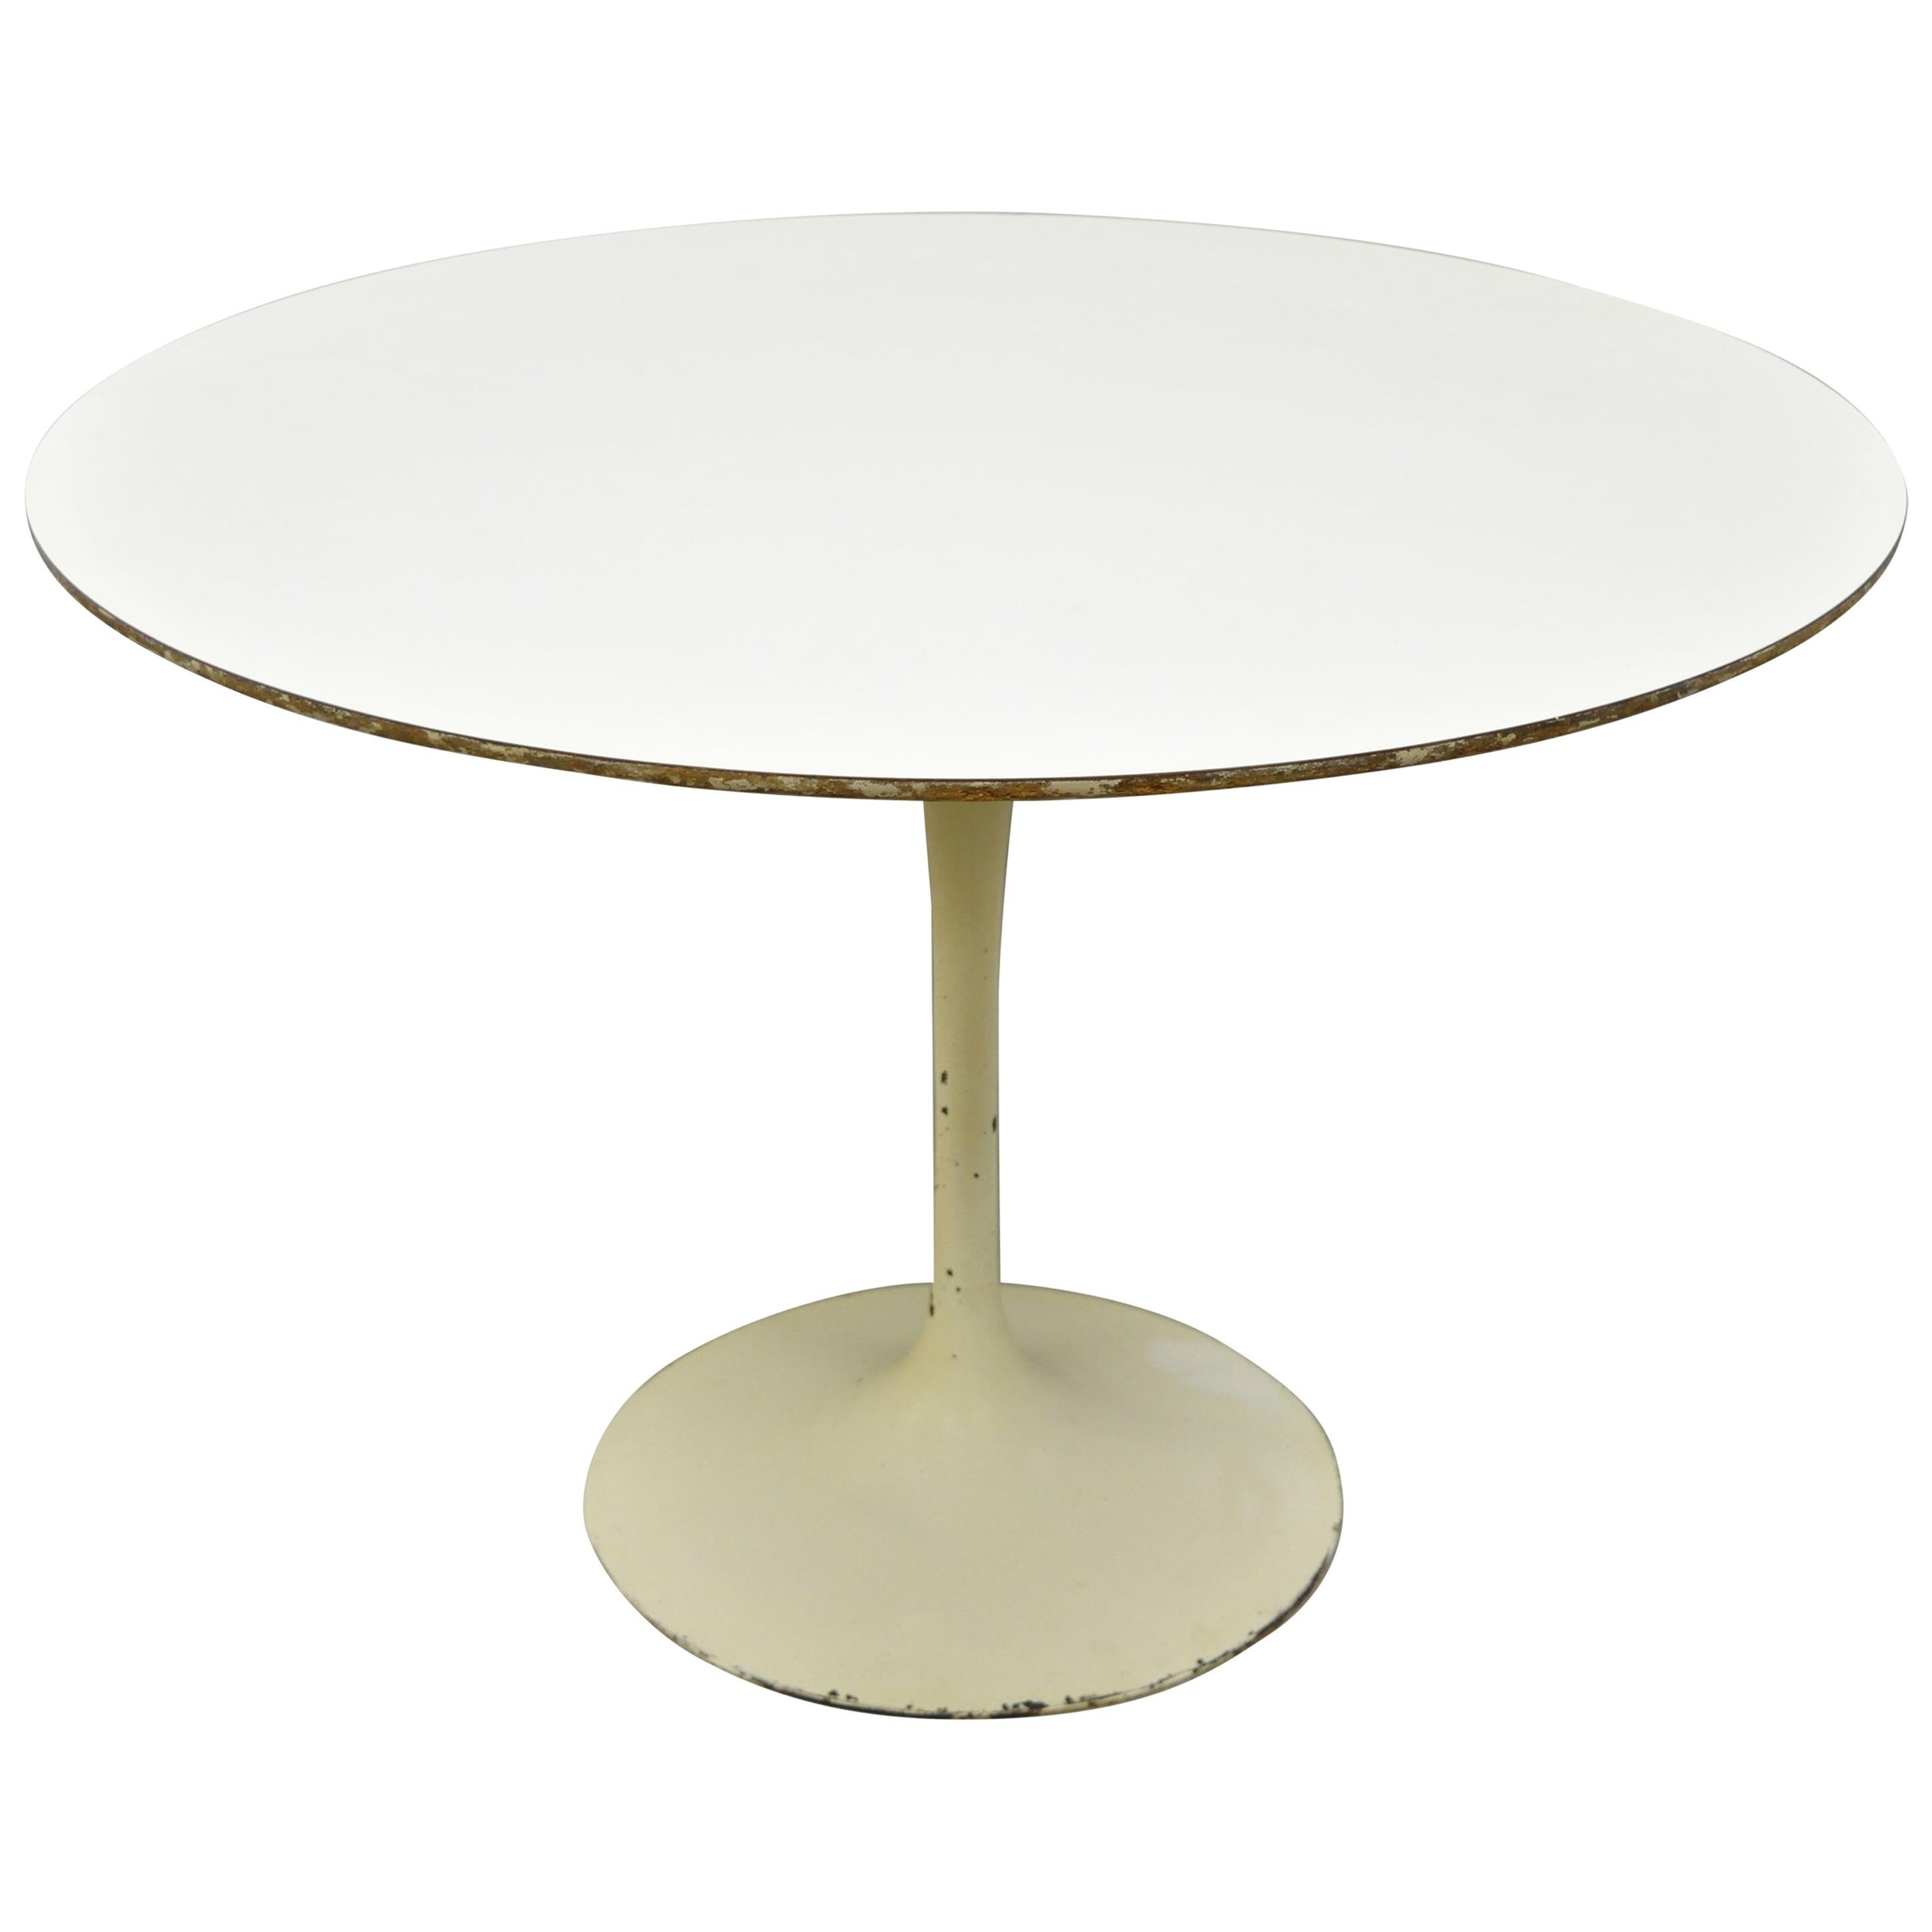 Vintage Mid-Century Modern Round Saarinen Style Tulip Base Dining Table